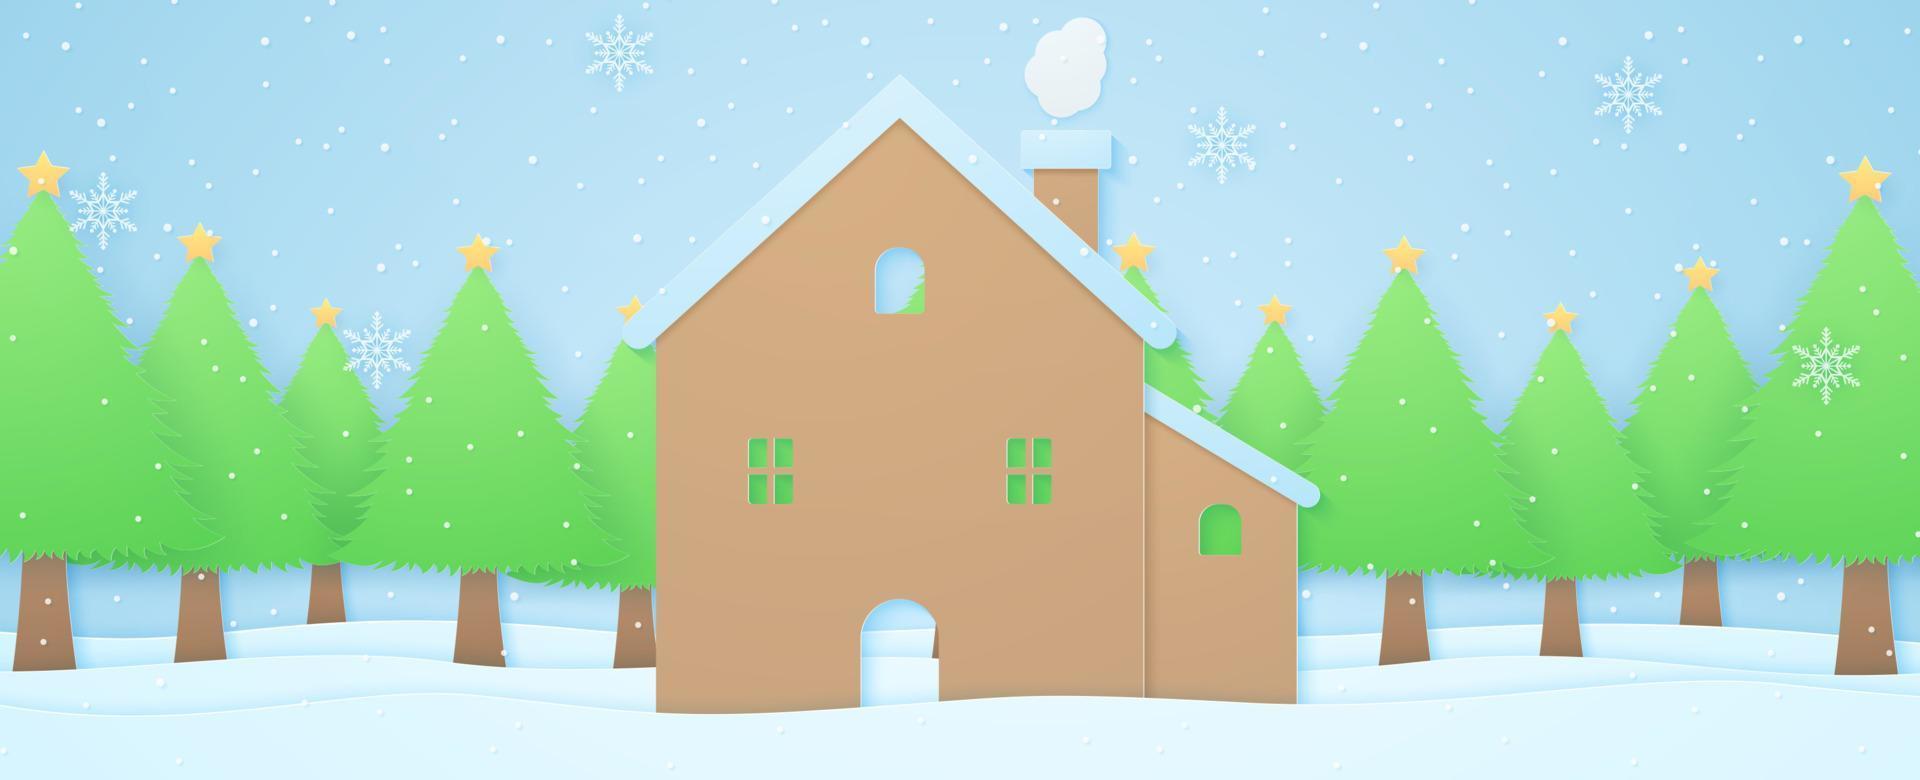 casa e alberi sulla neve in un paesaggio invernale con neve che cade, sfondo di nuvole, stile di arte della carta vettore